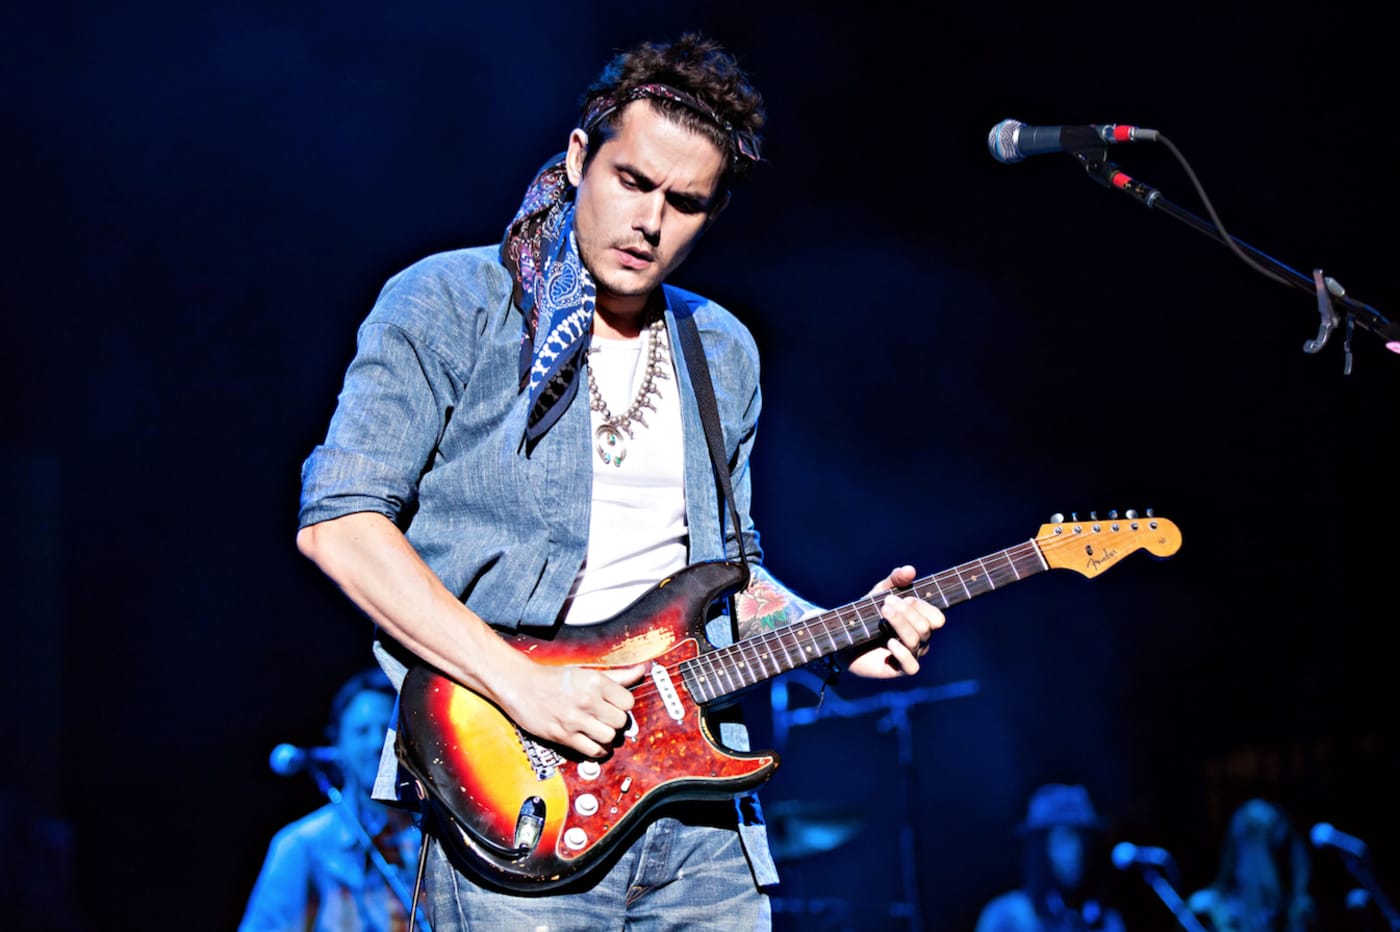 How to play blues like John Mayer